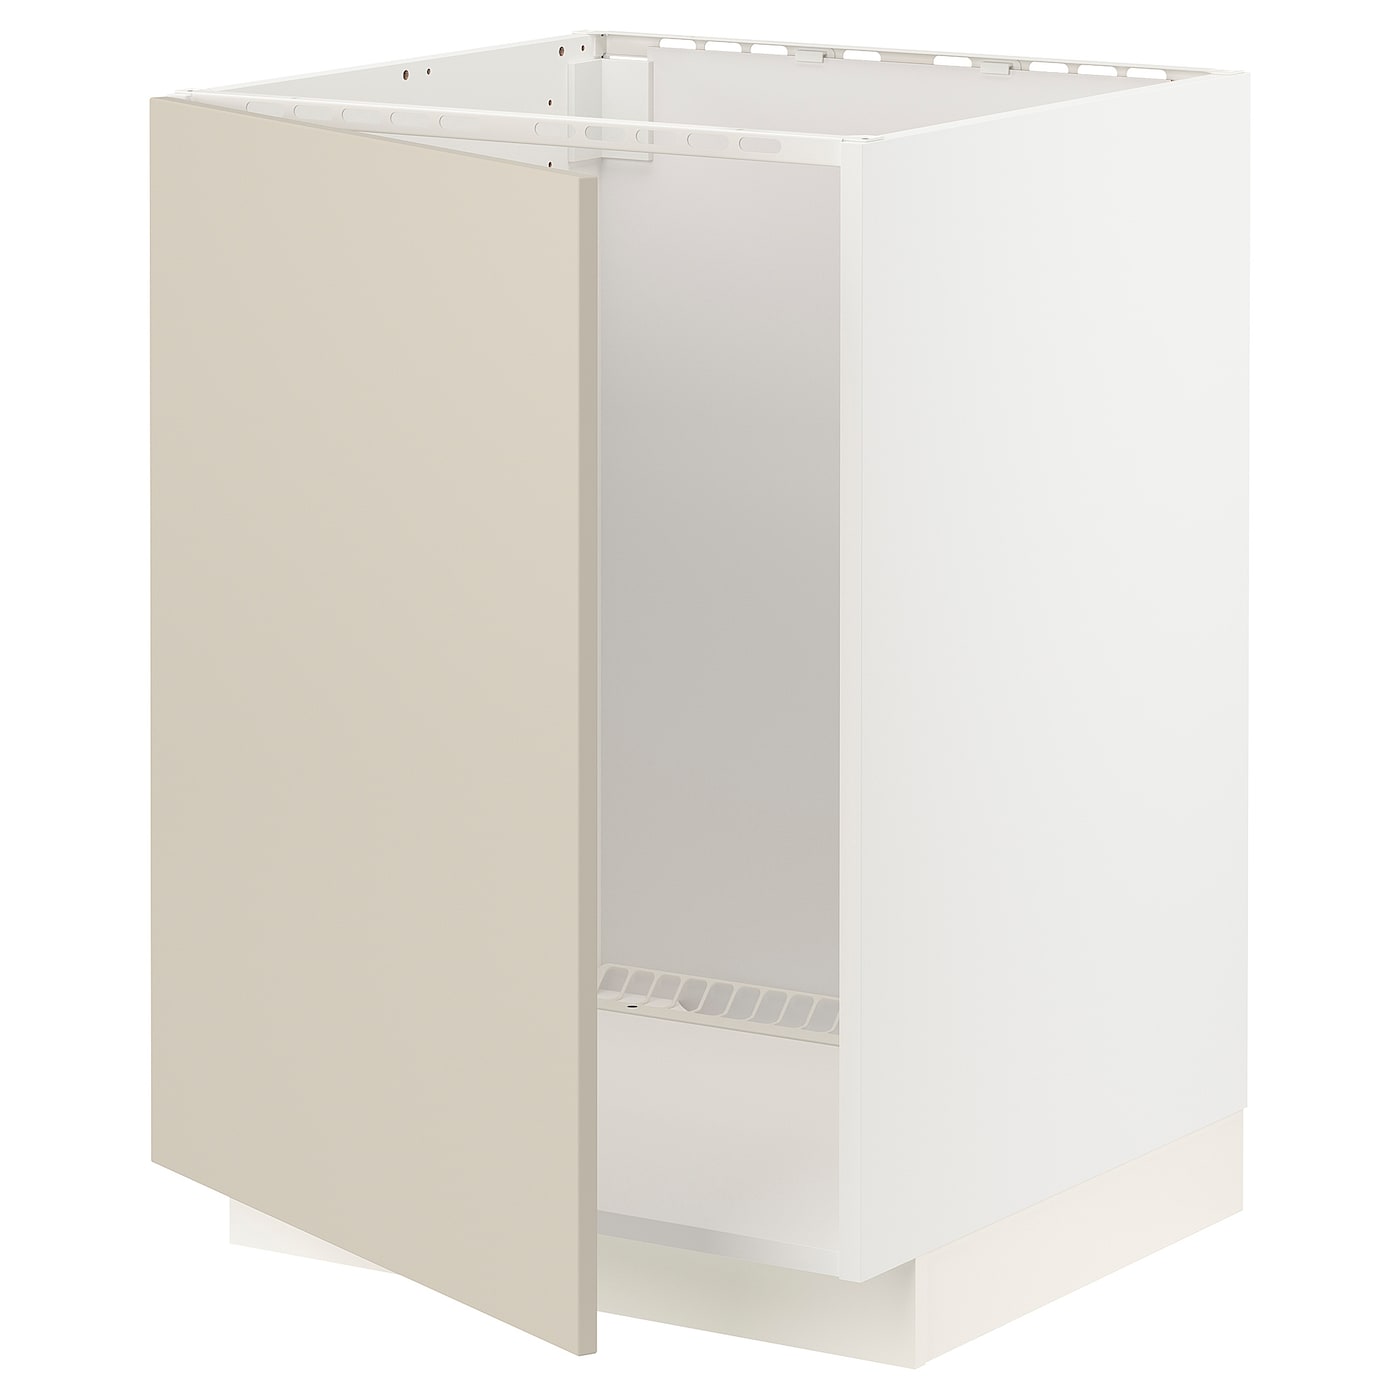 Напольный шкаф - METOD IKEA/ МЕТОД ИКЕА,  88х60  см, белый/светло-бежевый